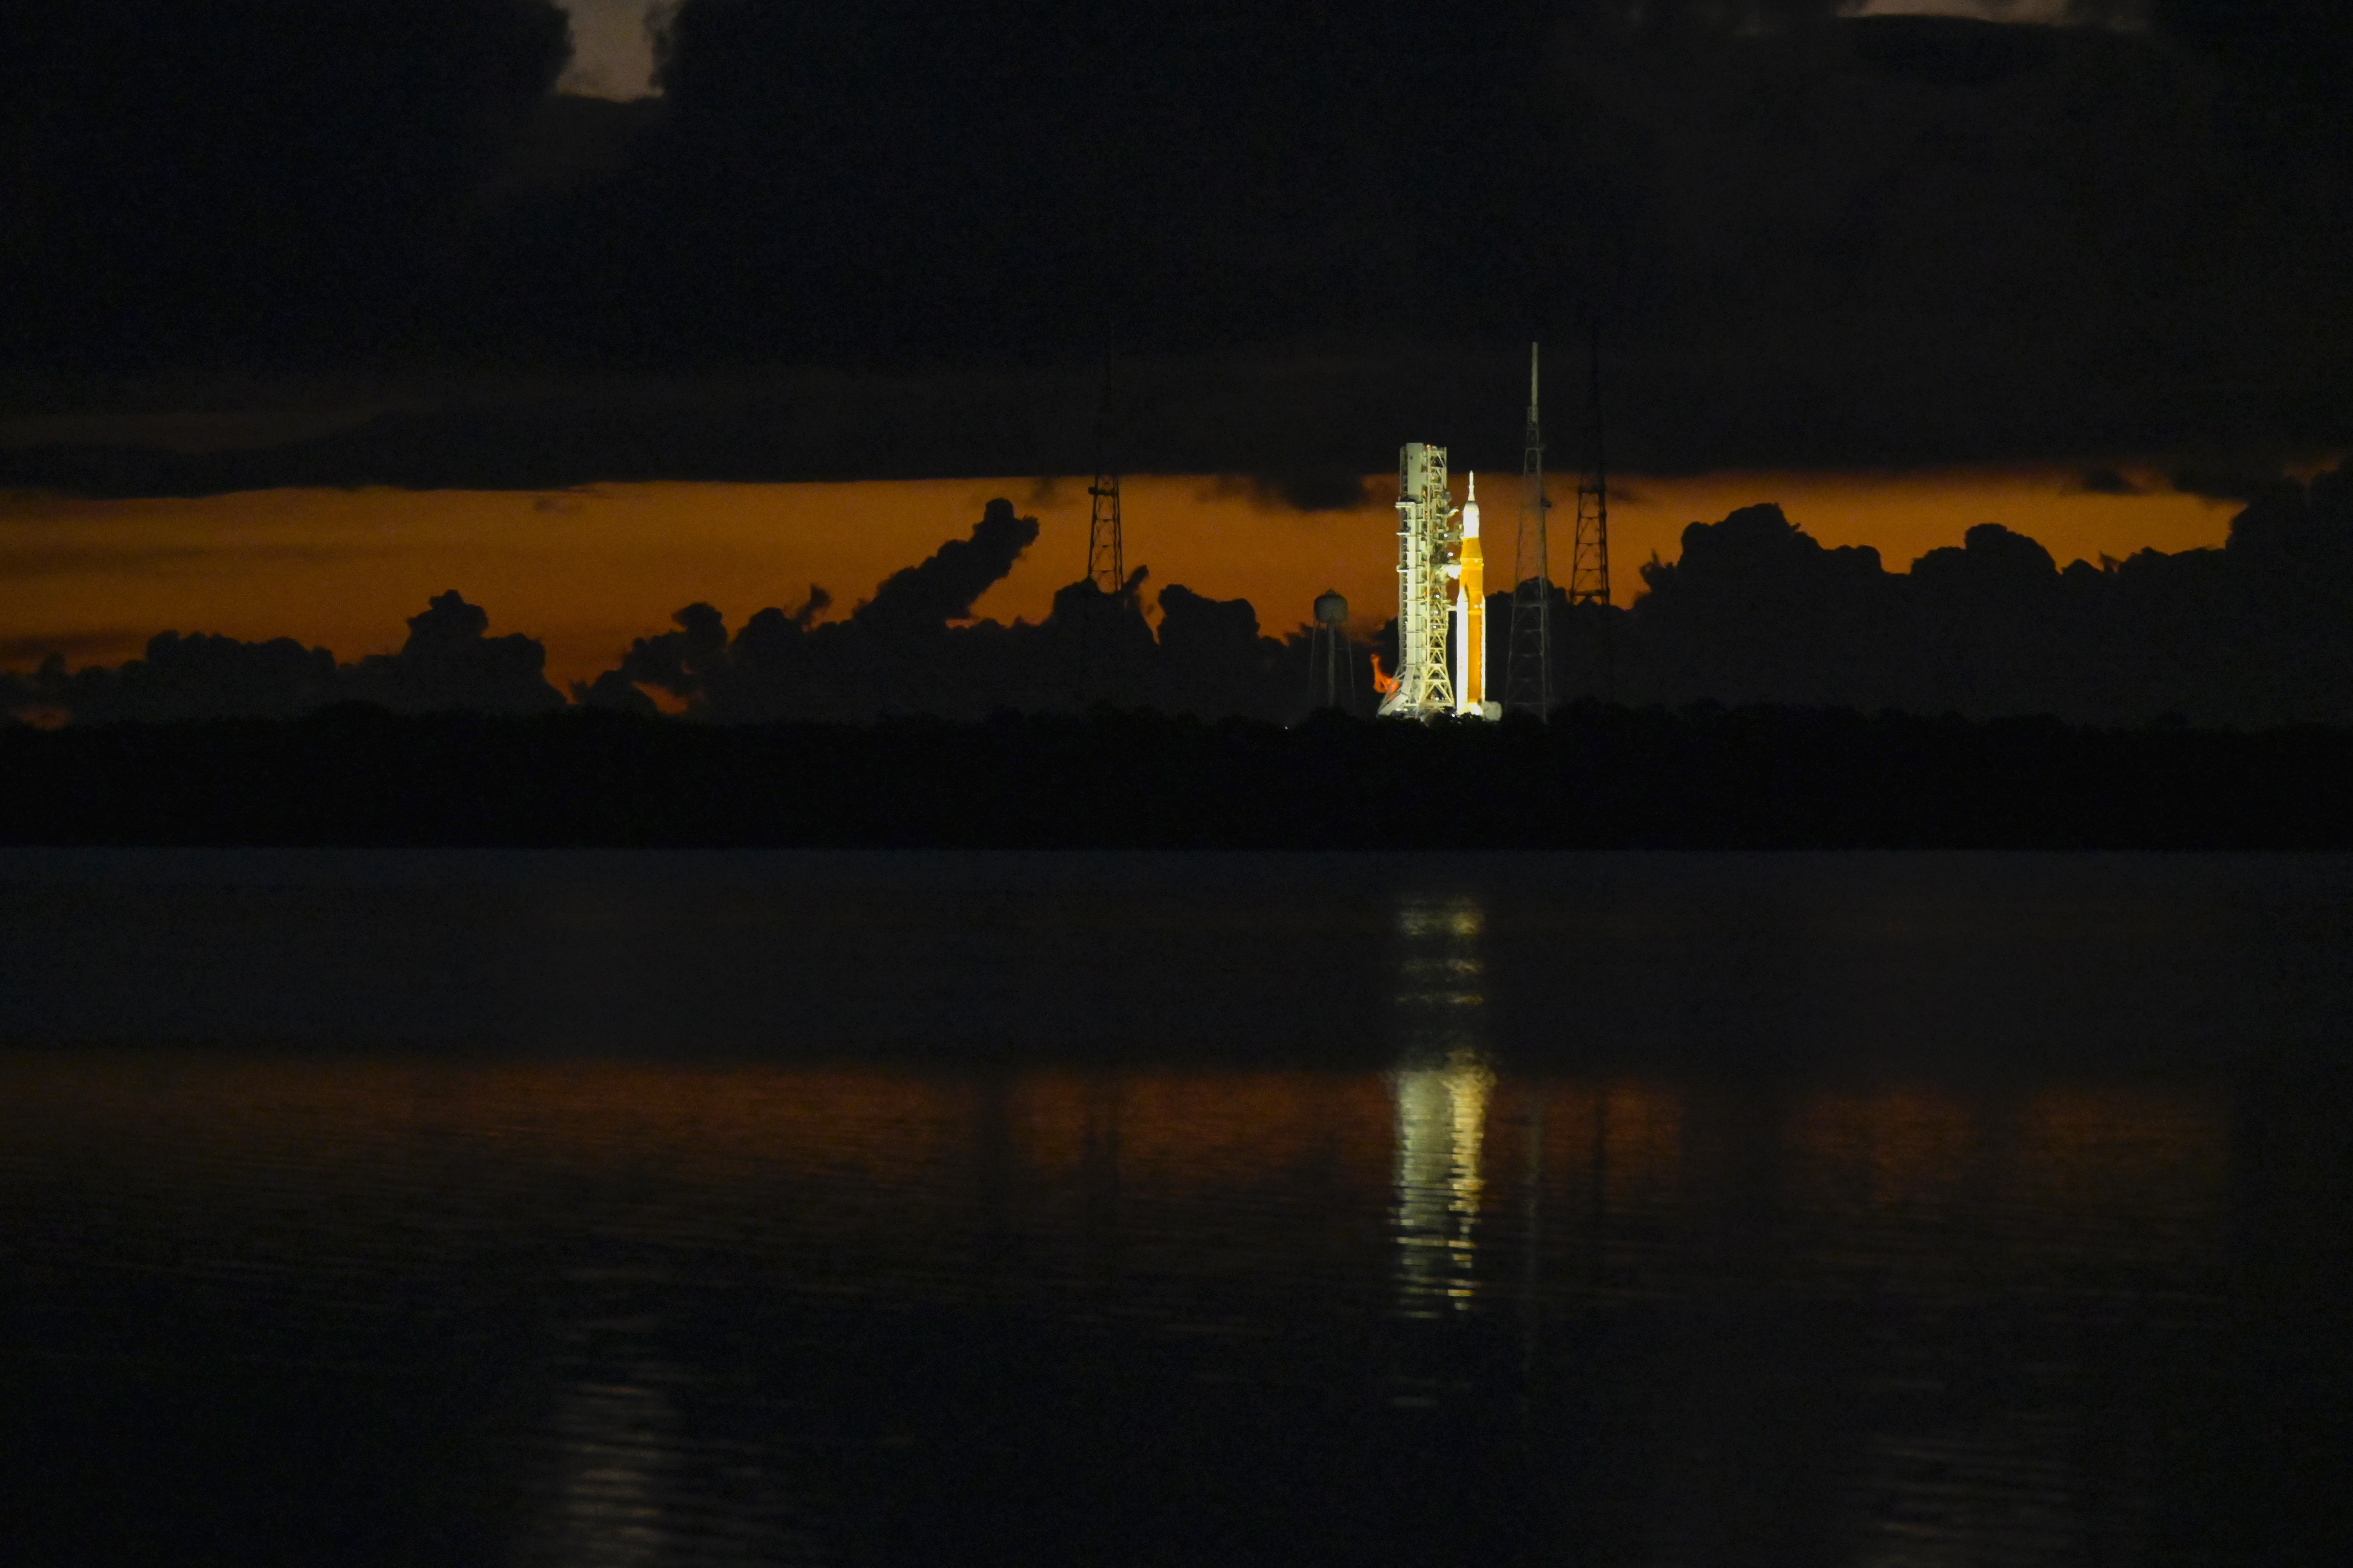 El Sistema de Lanzamiento Espacial (SLS), con su cápsula de tripulación Orión en la parte superior, situado en la plataforma esta mañana antes de conocerse la suspensión del lanzamiento en Cabo Cañaveral, Florida (REUTERS/Steve Nesius)